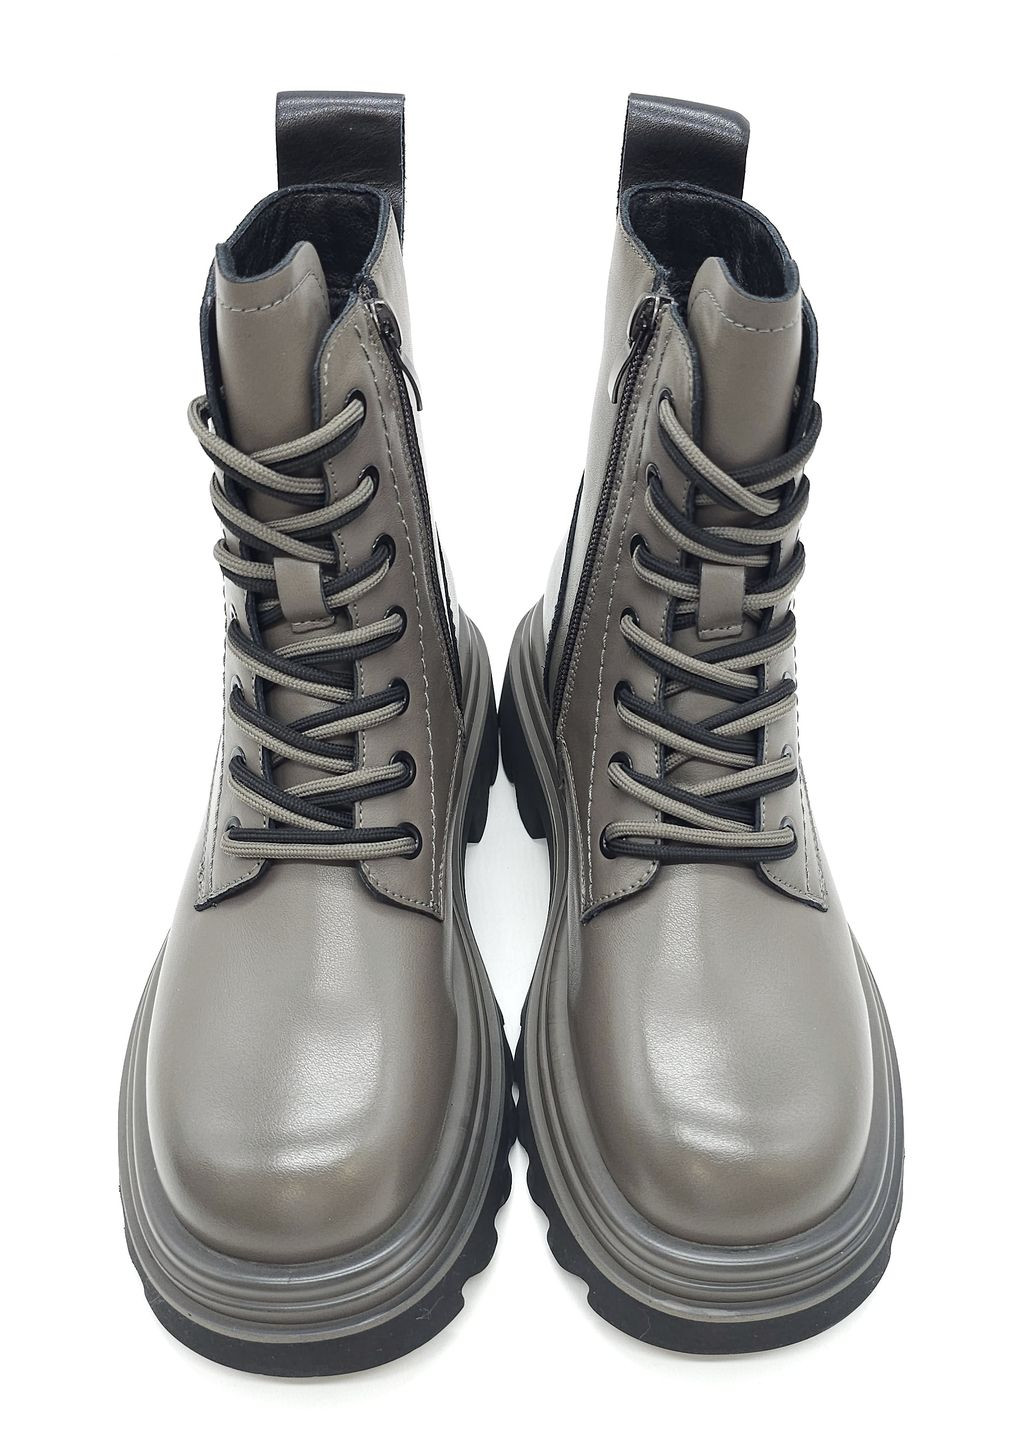 Осенние женские ботинки серые кожаные l-13-8 23 см (р) Lonza